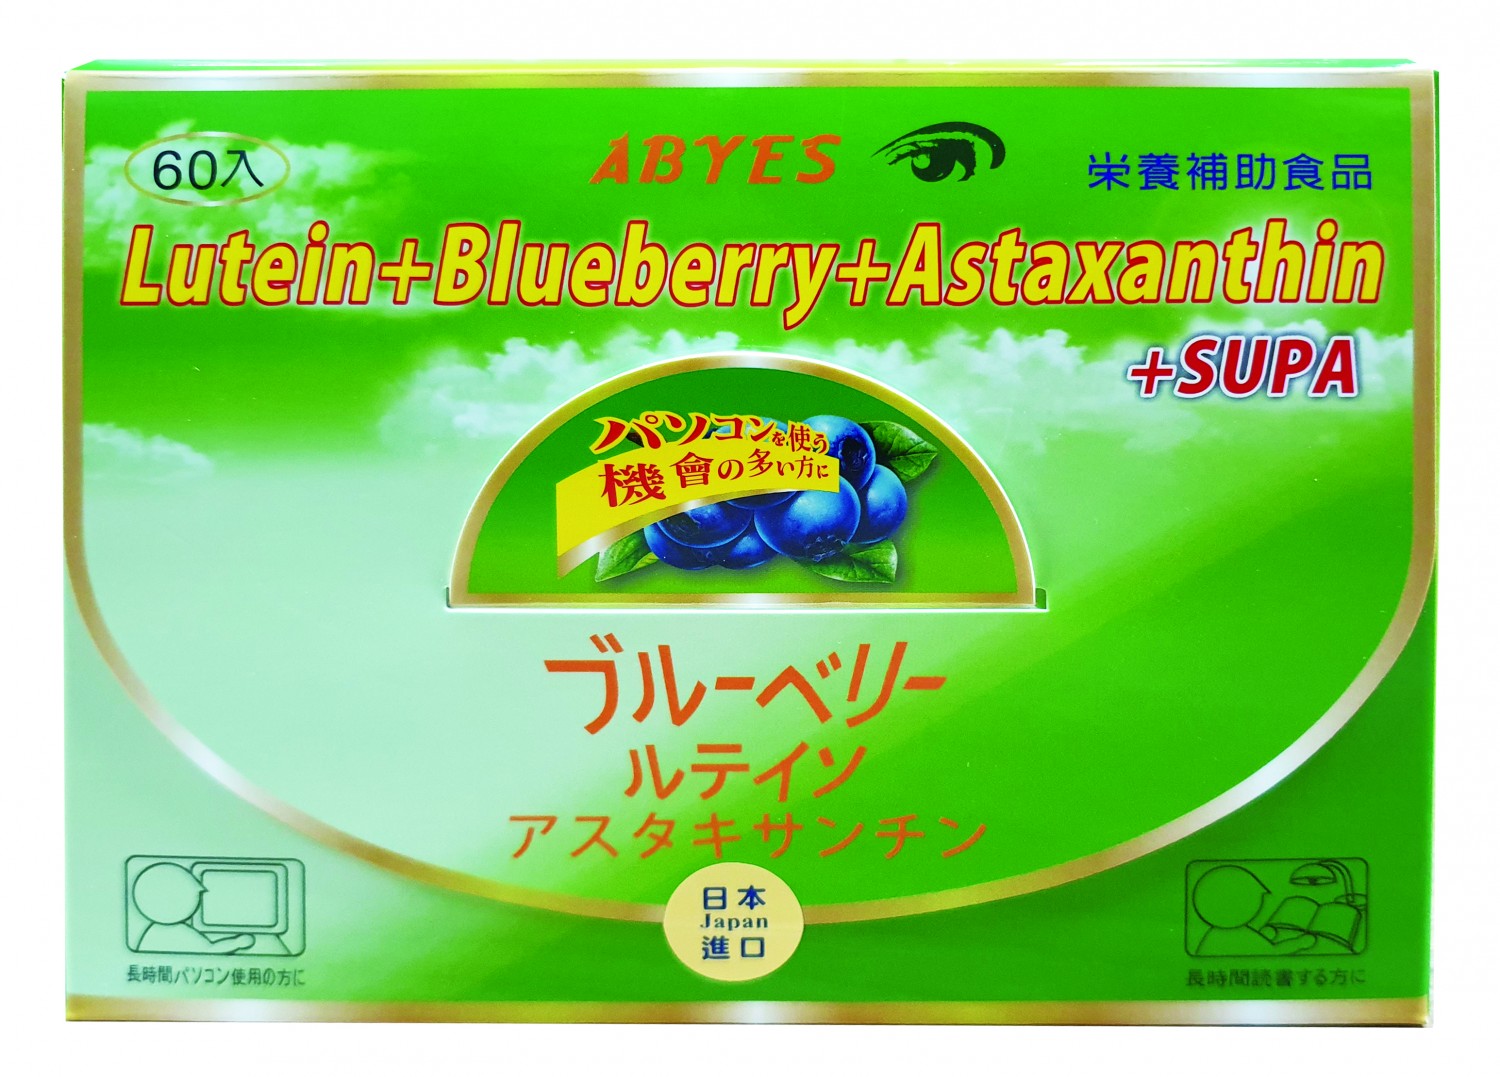 日本原裝  葉黃素+藍莓多酚+蝦紅素 5合1晶亮鮮明軟膠囊 (全素)(60顆裝/每顆300毫克)